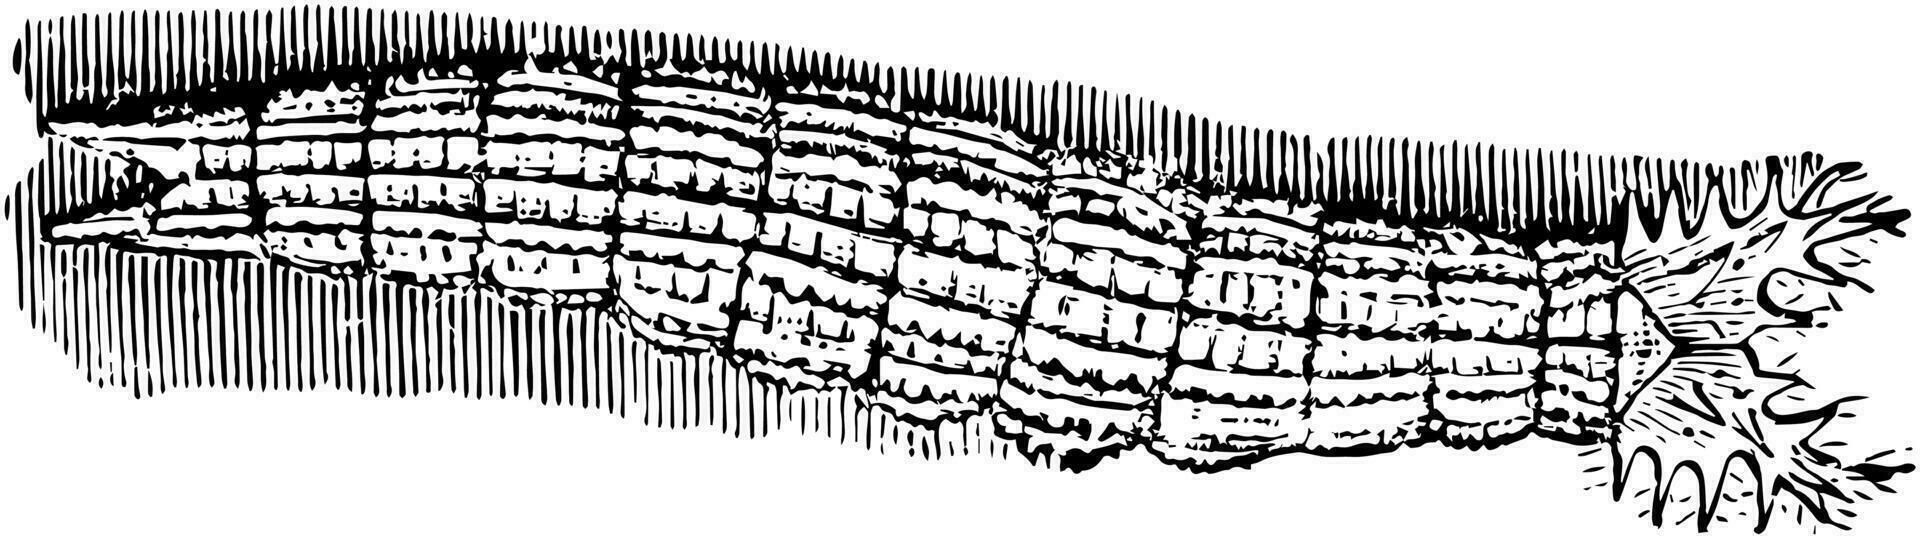 emperador mariposa larva, Clásico ilustración. vector